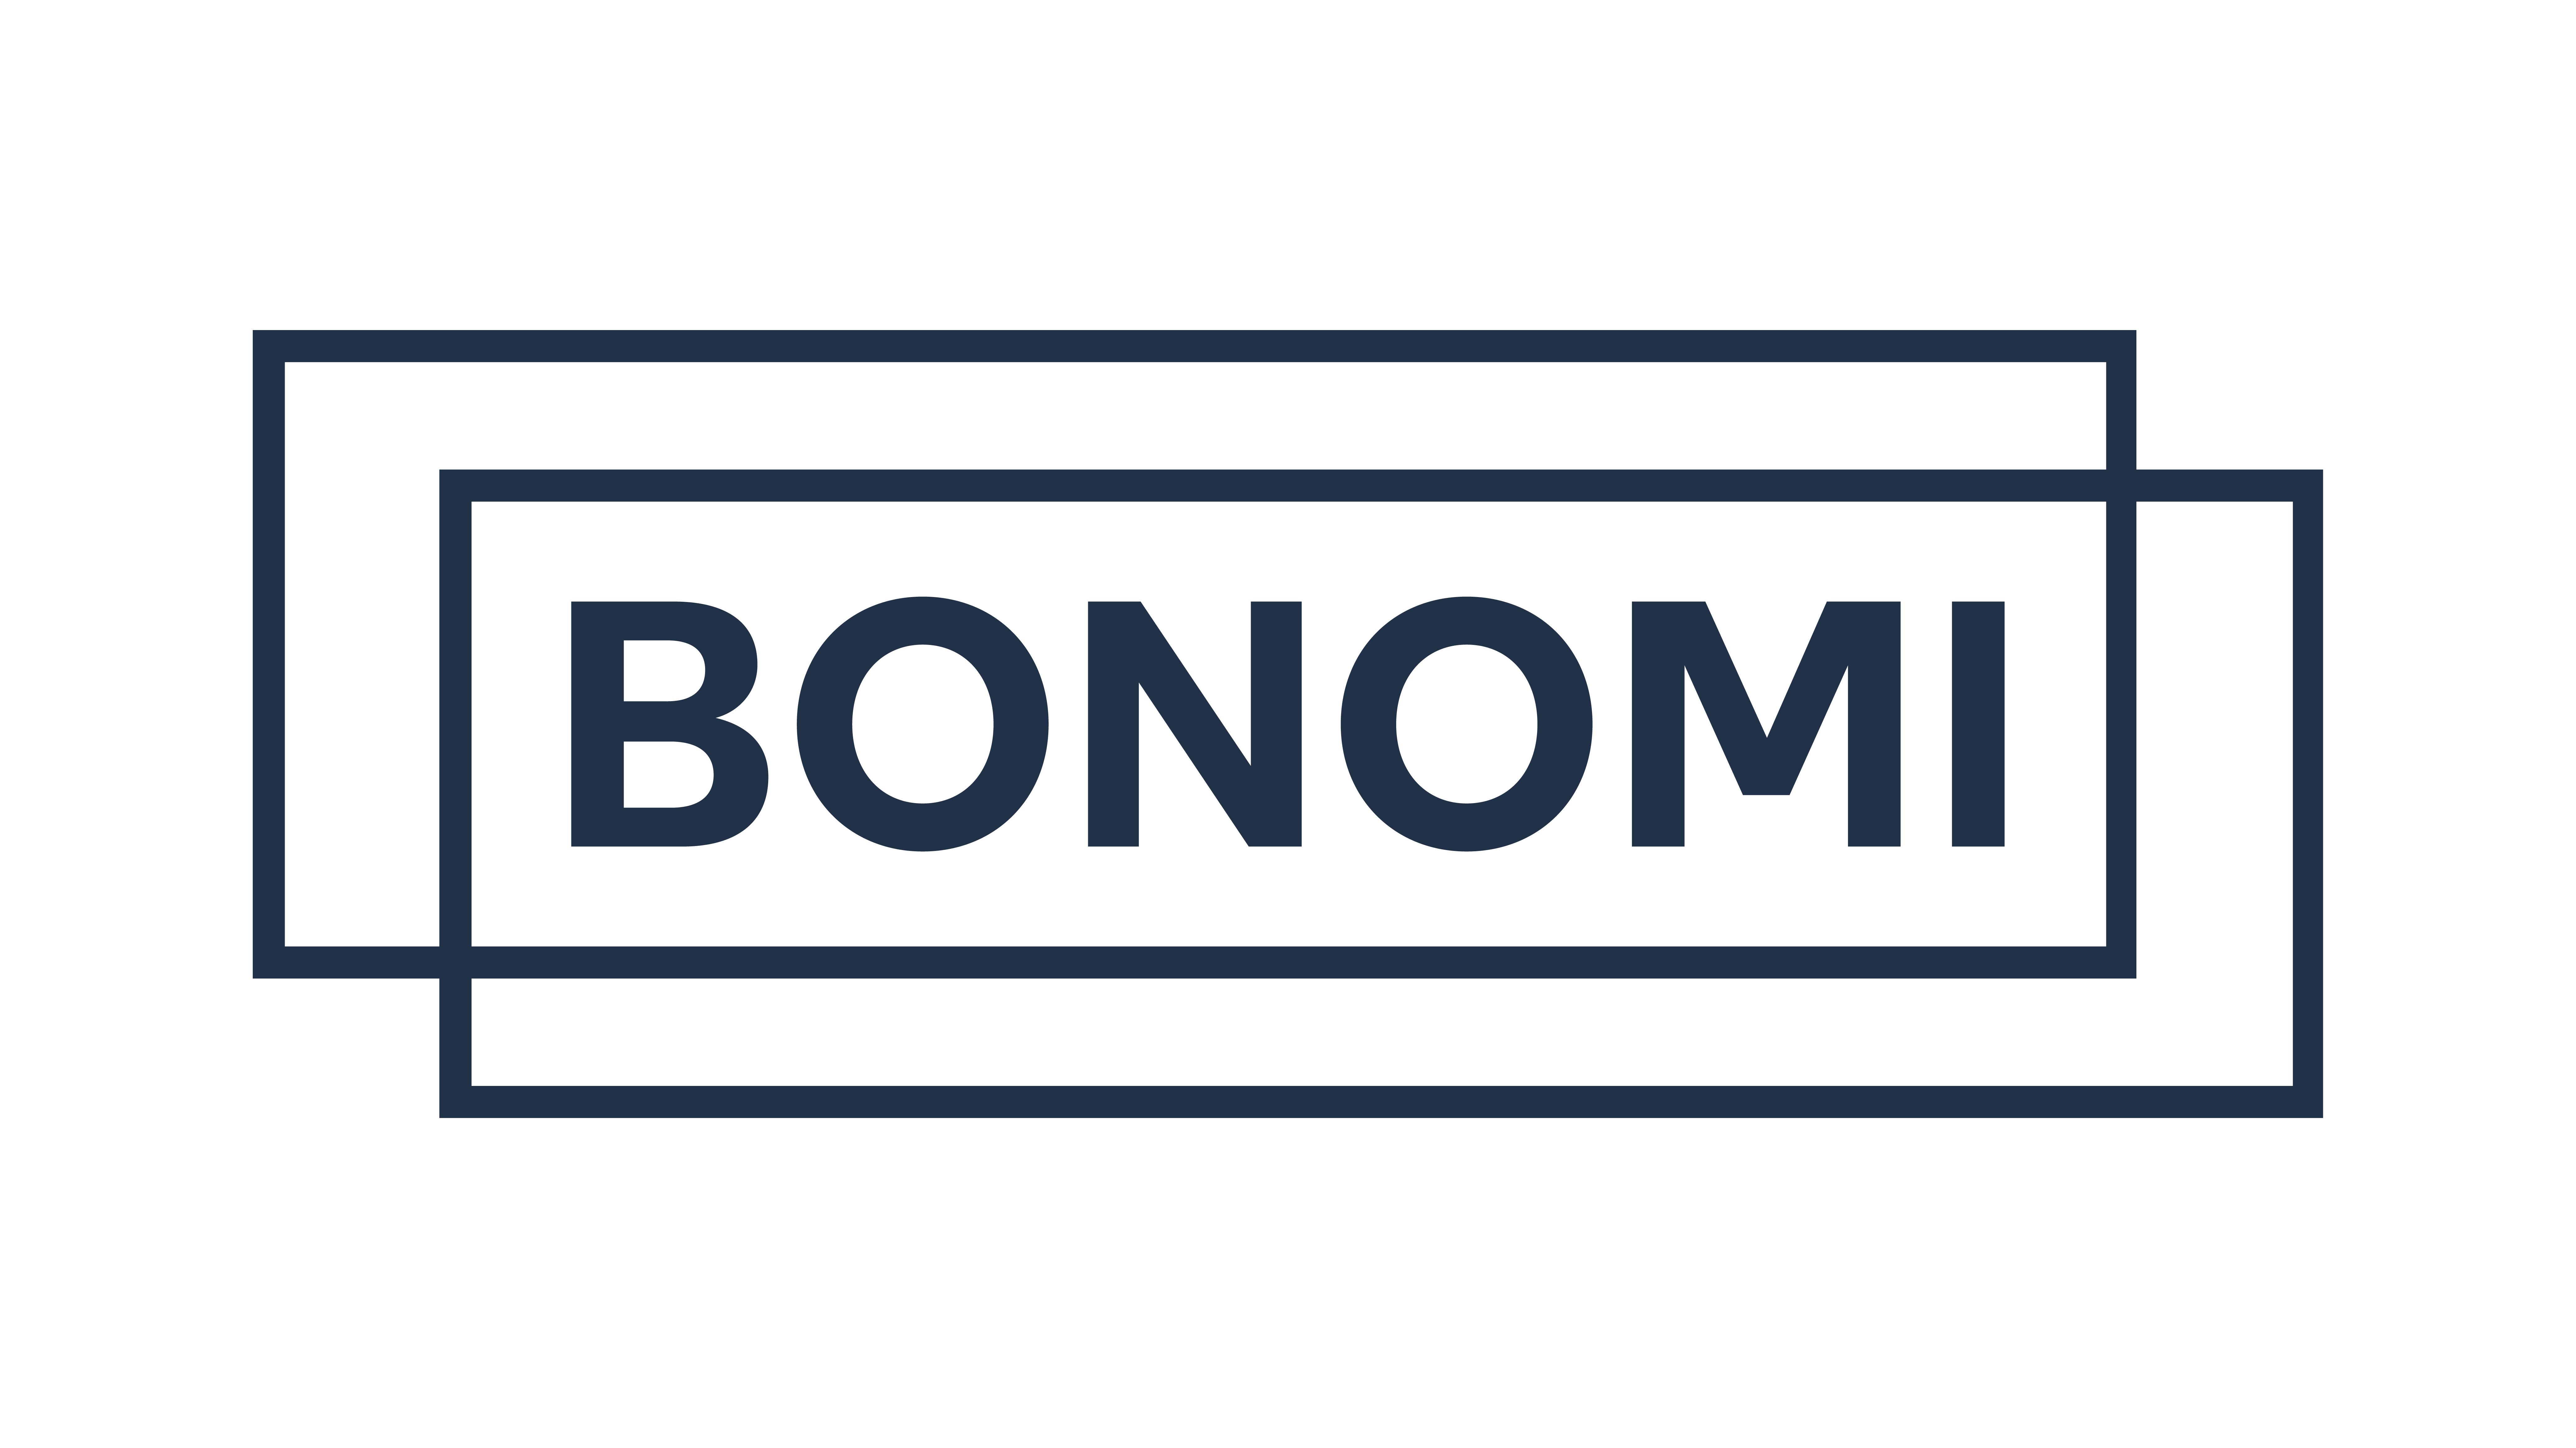 BONOMI